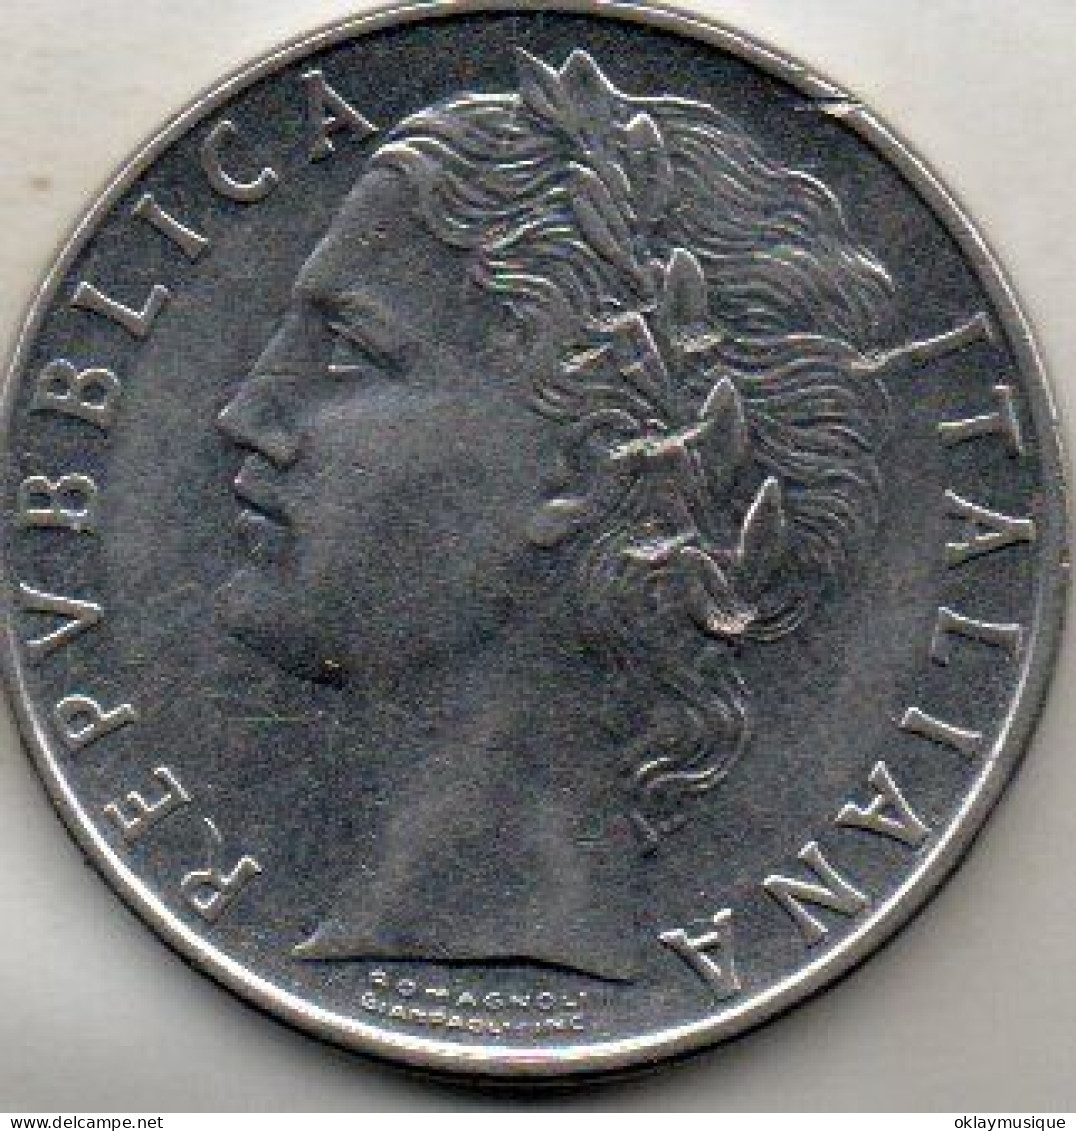 100 Lires 1979 - 100 Liras